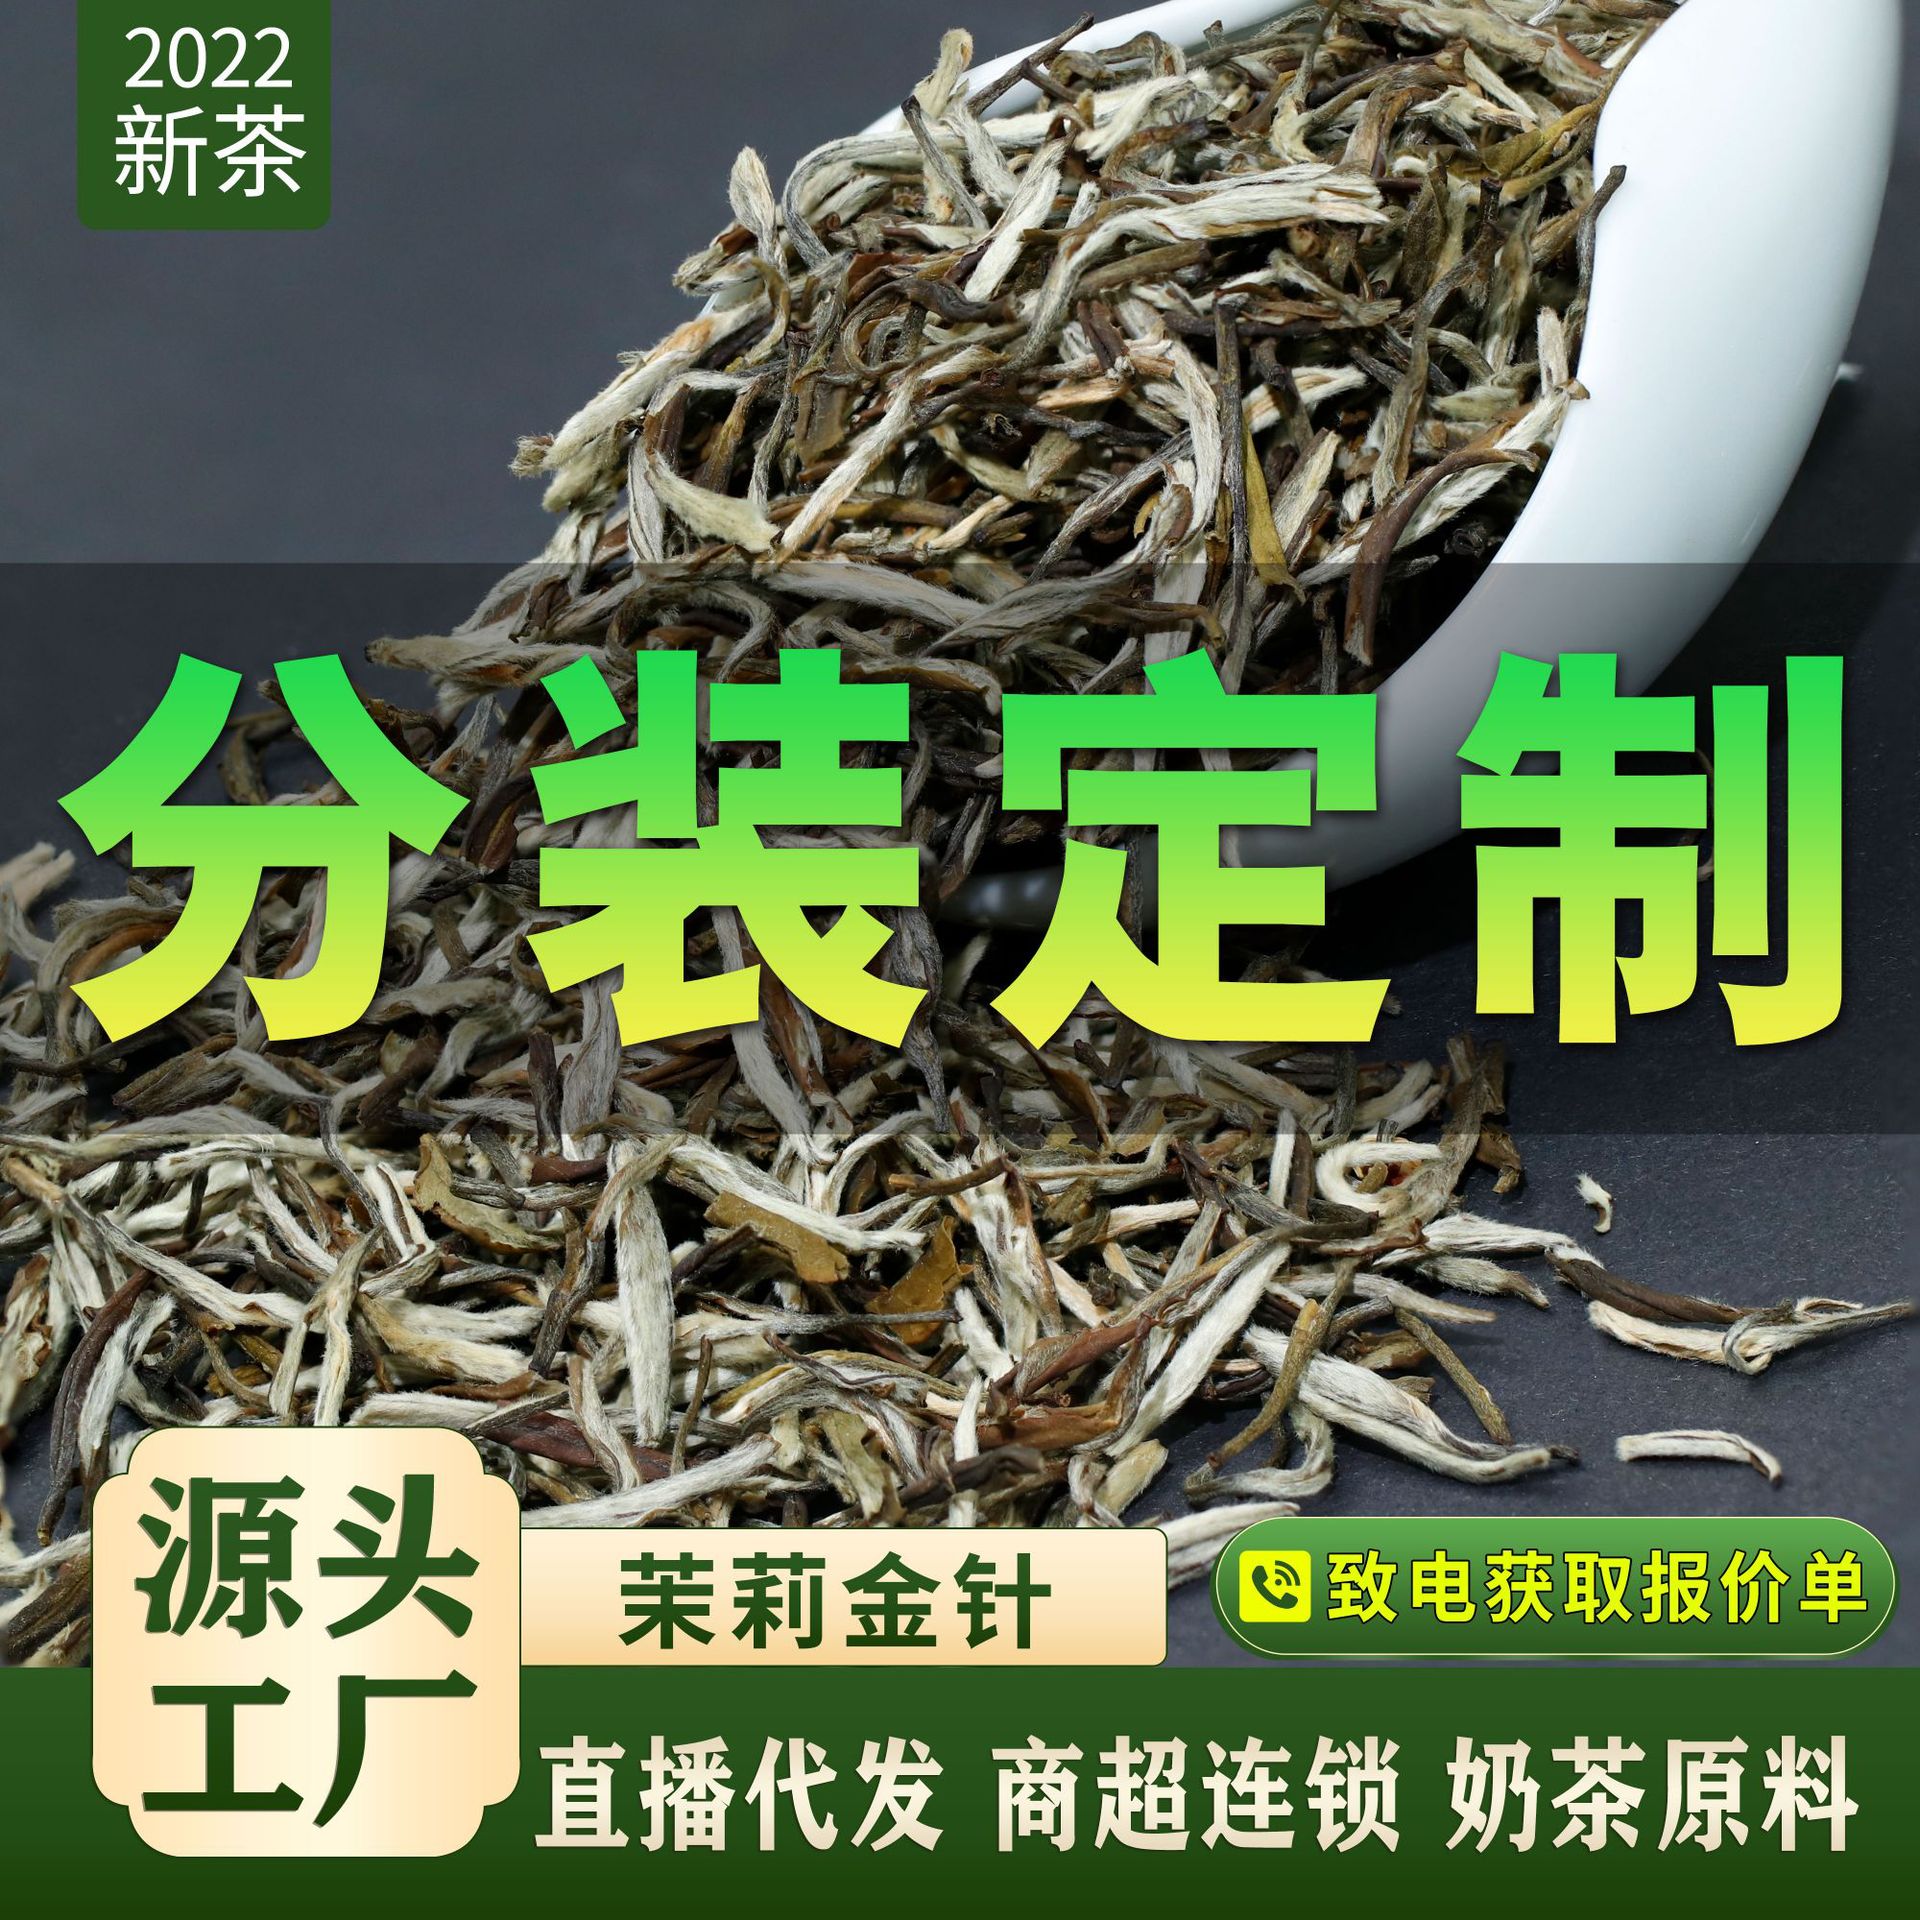 2022横县茉莉花针王茶花茶系列产品分装定制贴牌包装花茶厂家直供